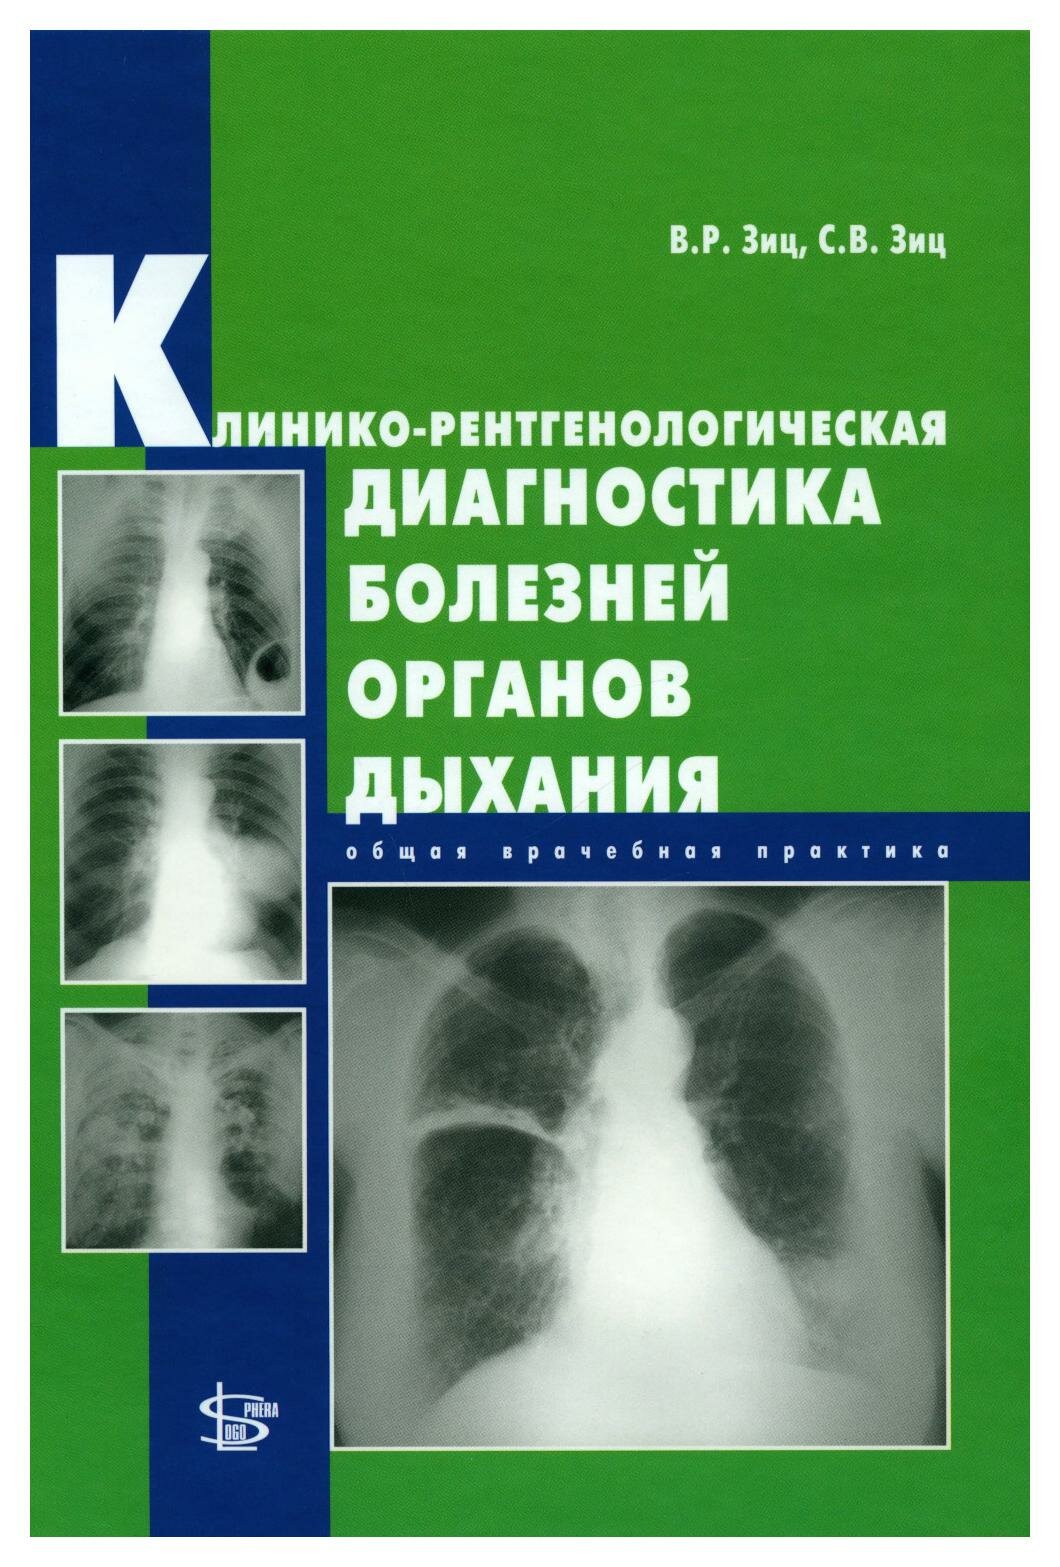 Клинико-рентгенологическая диагностика болезней органов дыхания: общая врачебная практика. Зиц В. Р, Зиц С. В. Логосфера